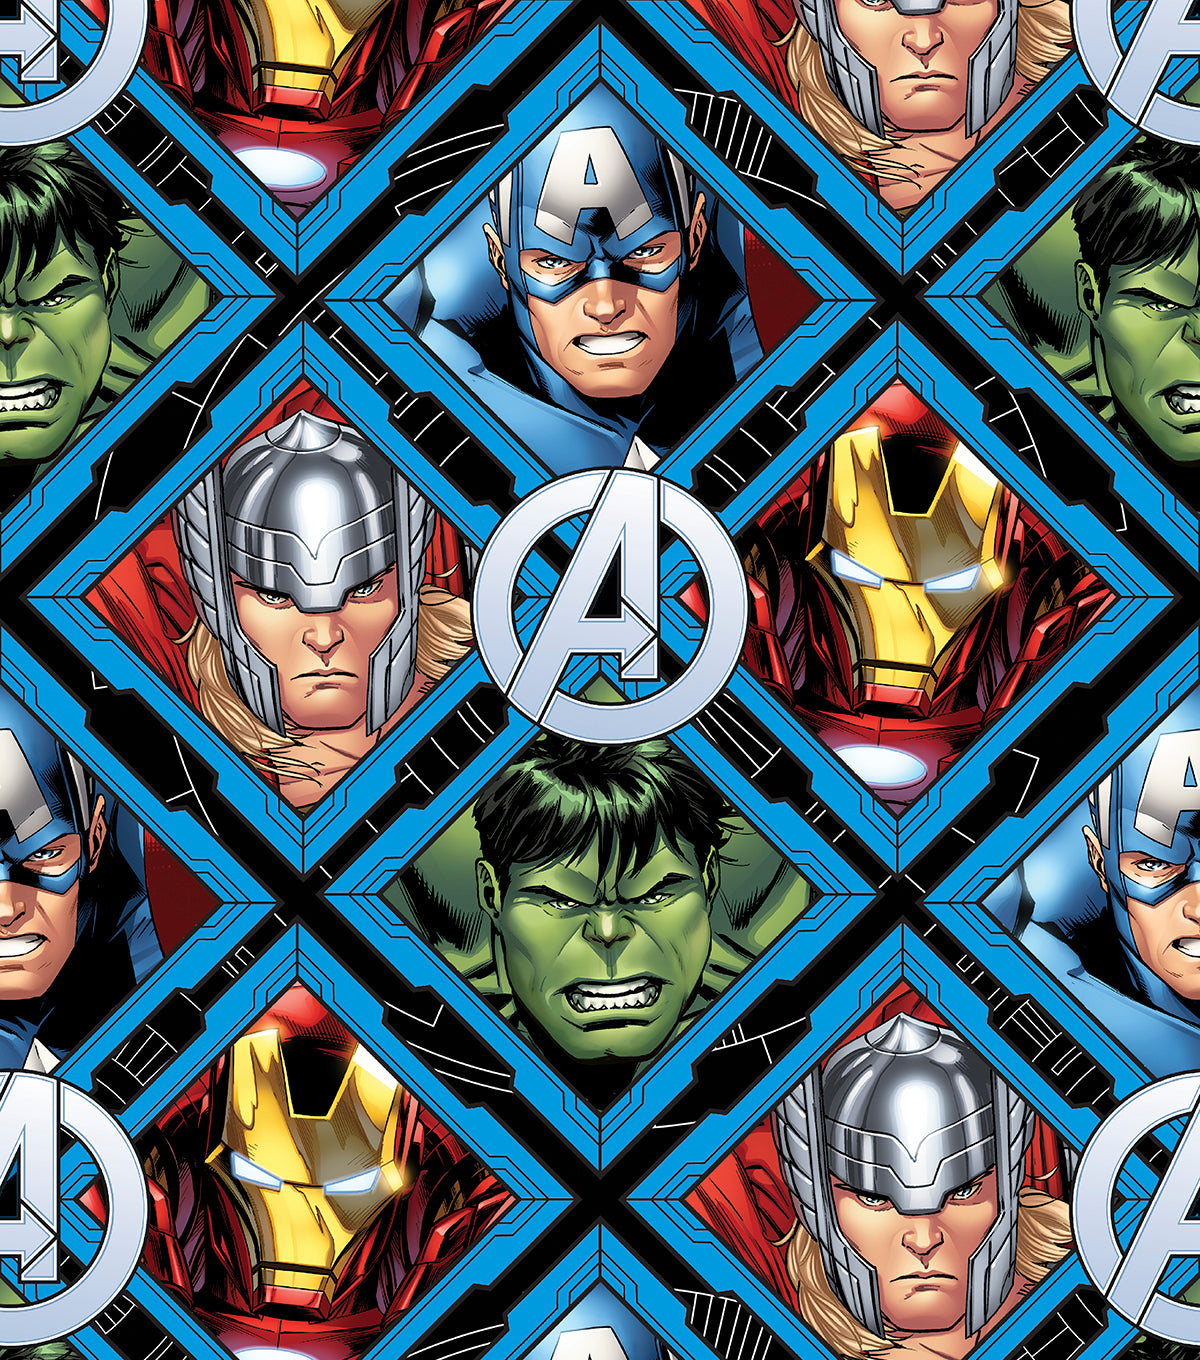 Marvel's Avengers Unite